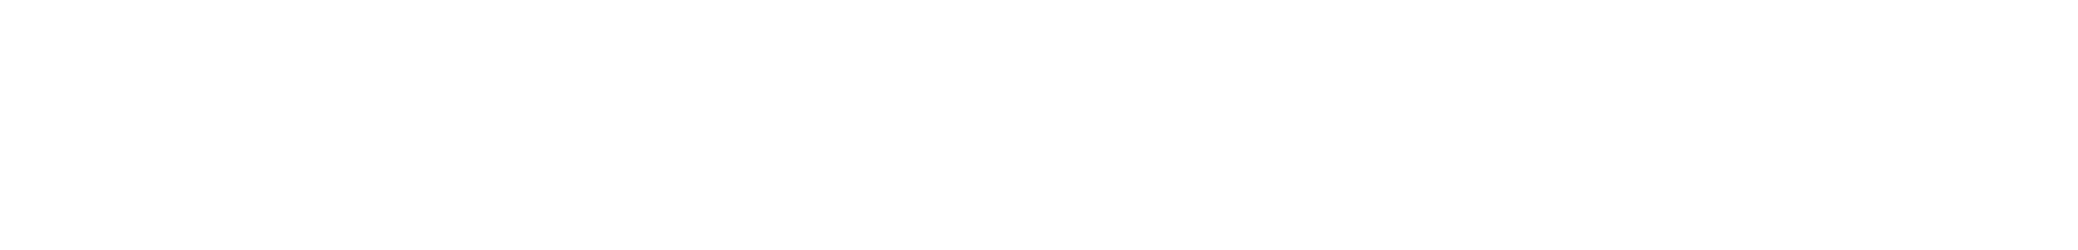 foodshare logo image